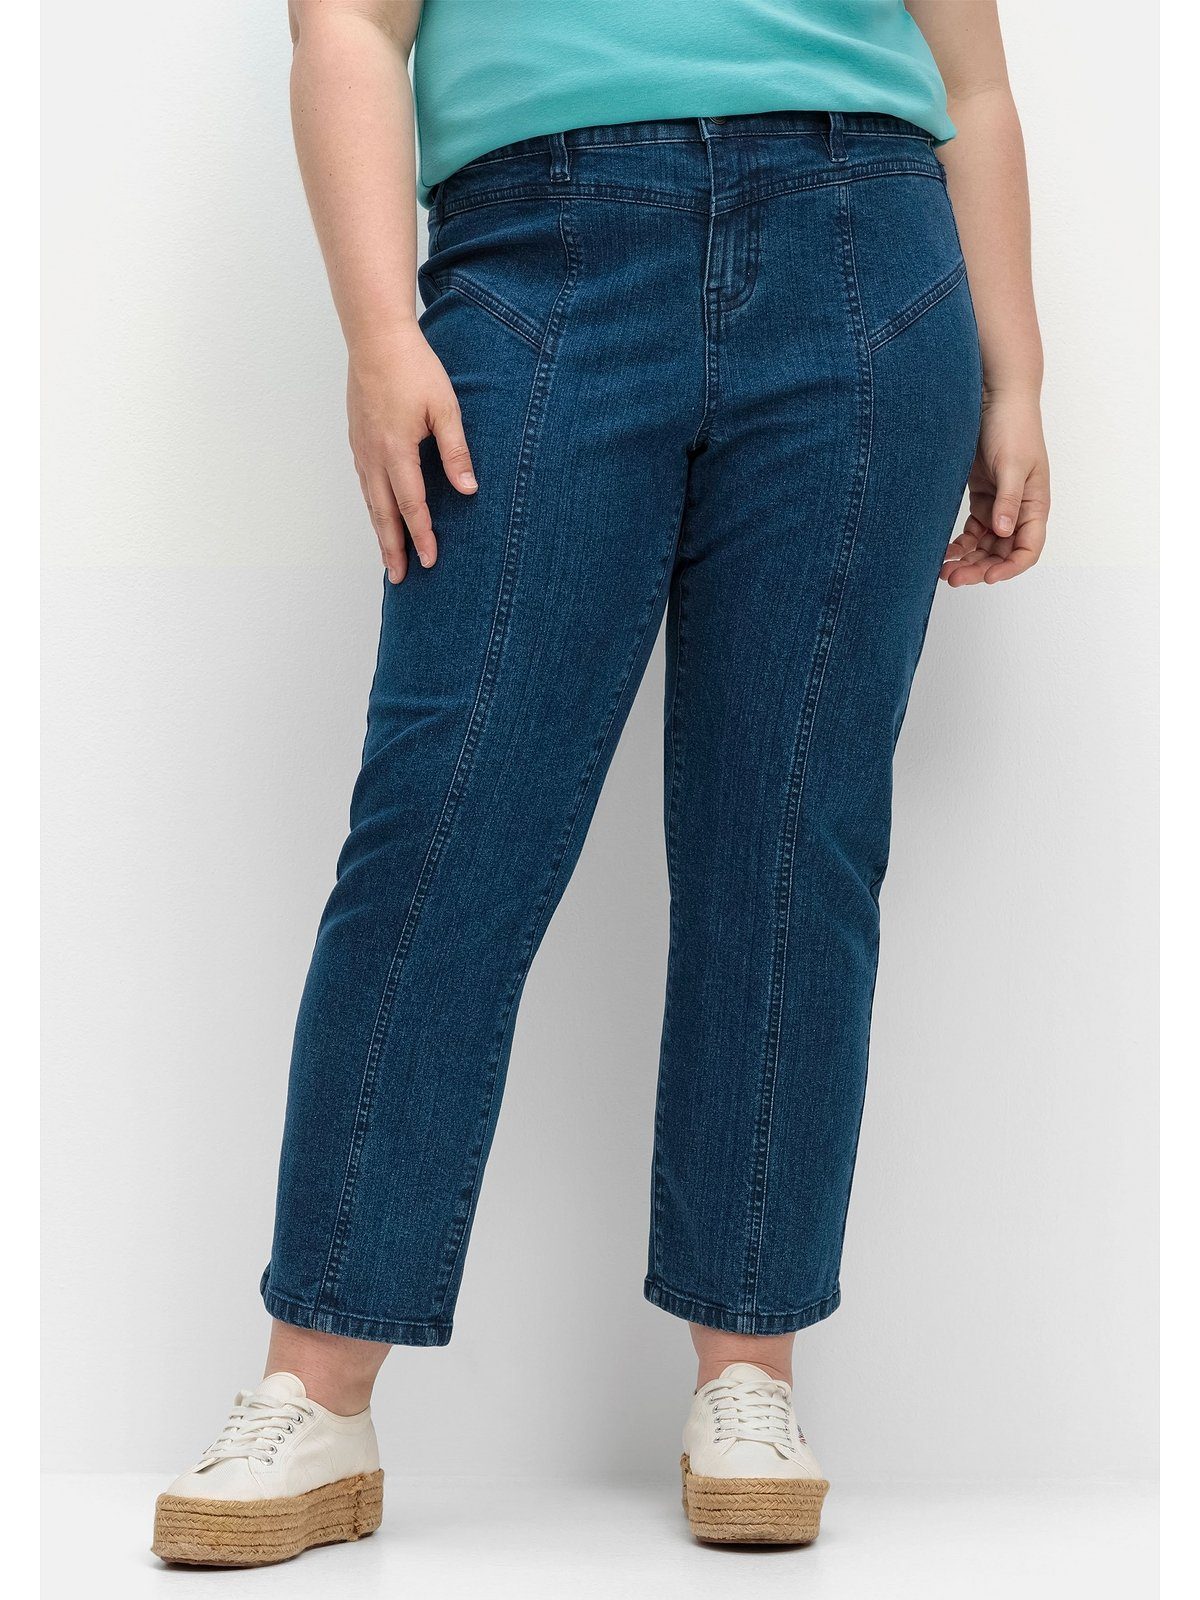 Sheego Gerade Jeans Große Größen PIA für sehr kräftige Oberschenkel, Gerade  Beinform in knöchelfreier Länge